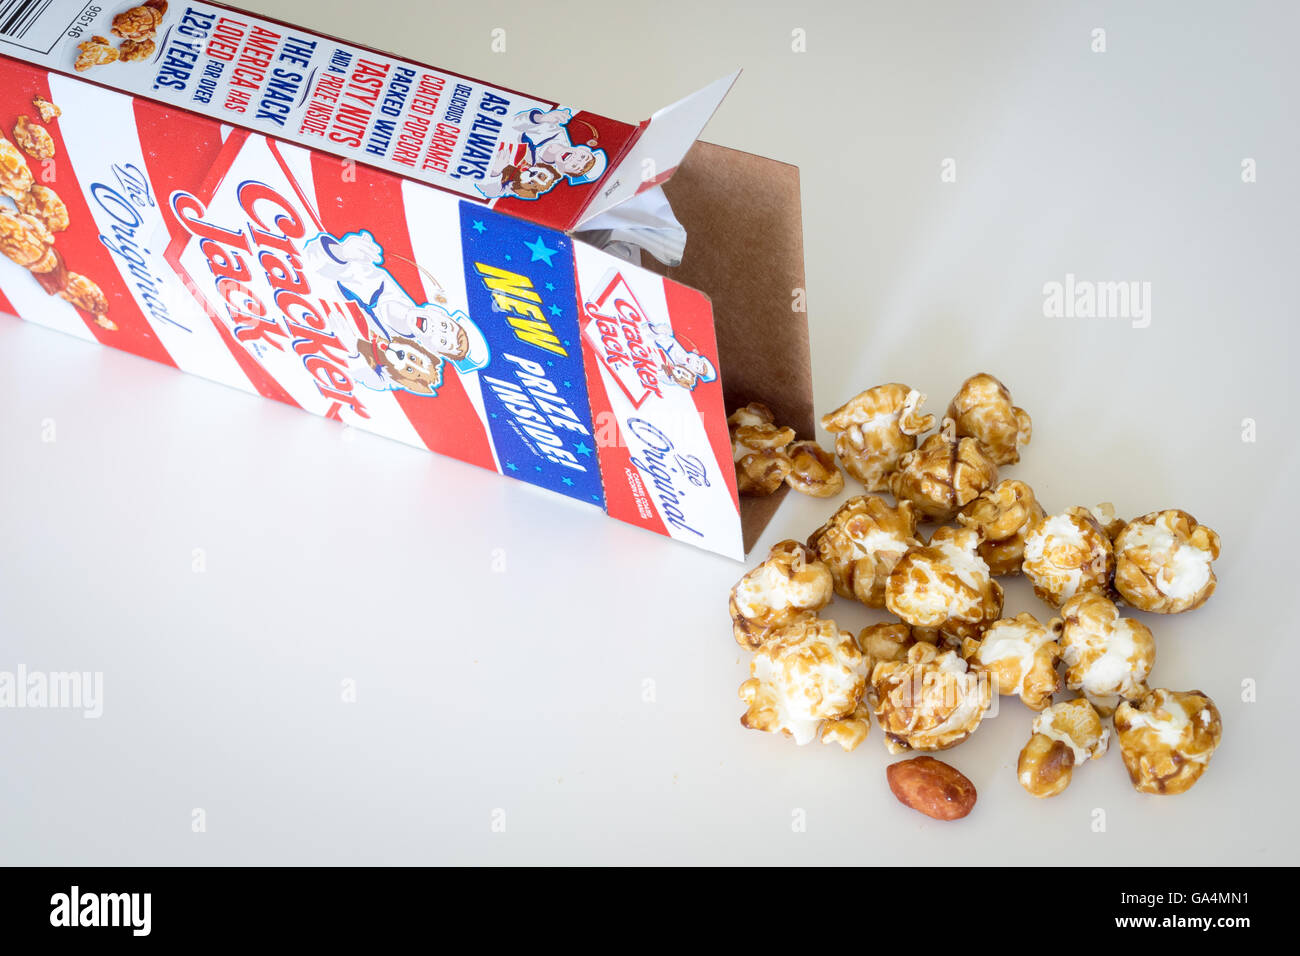 Une boîte de Cracker Jack, un snack-américain composé de mélasse-saveur de caramel, pop-corn et les arachides. Banque D'Images